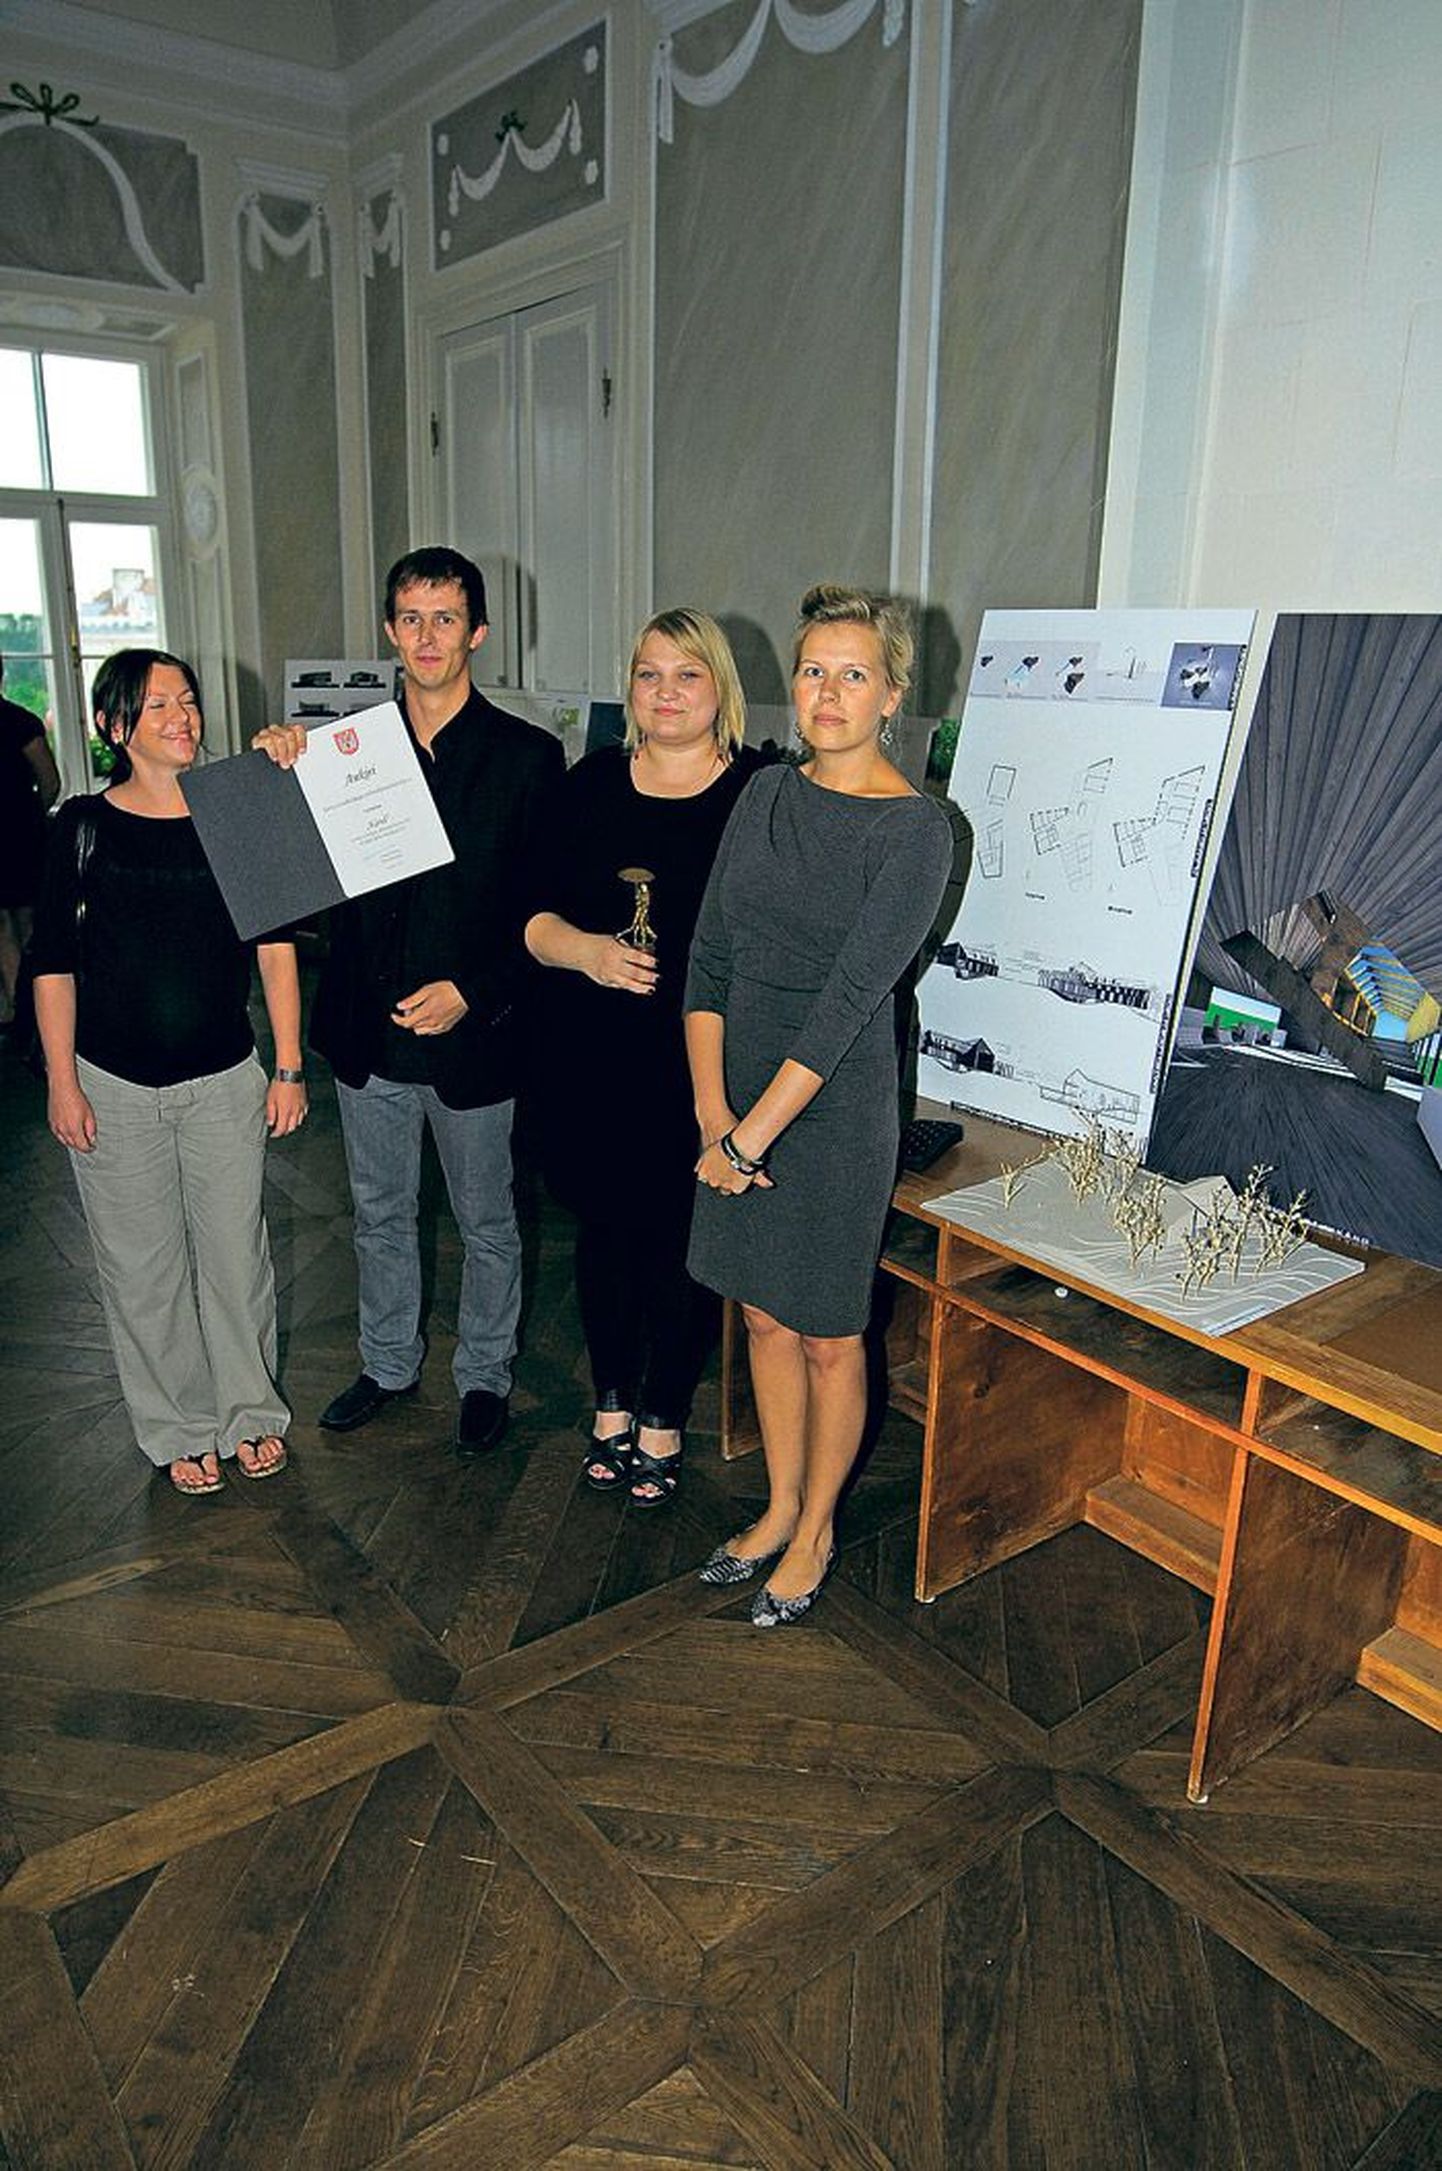 Võidutöö autorid Kai Süda (paremalt), Diana Taalfeld, Martin Kinks ja Margit Valma. Oma tööga jäid nad väga rahule,kuid võitu ette näha ei osanud.